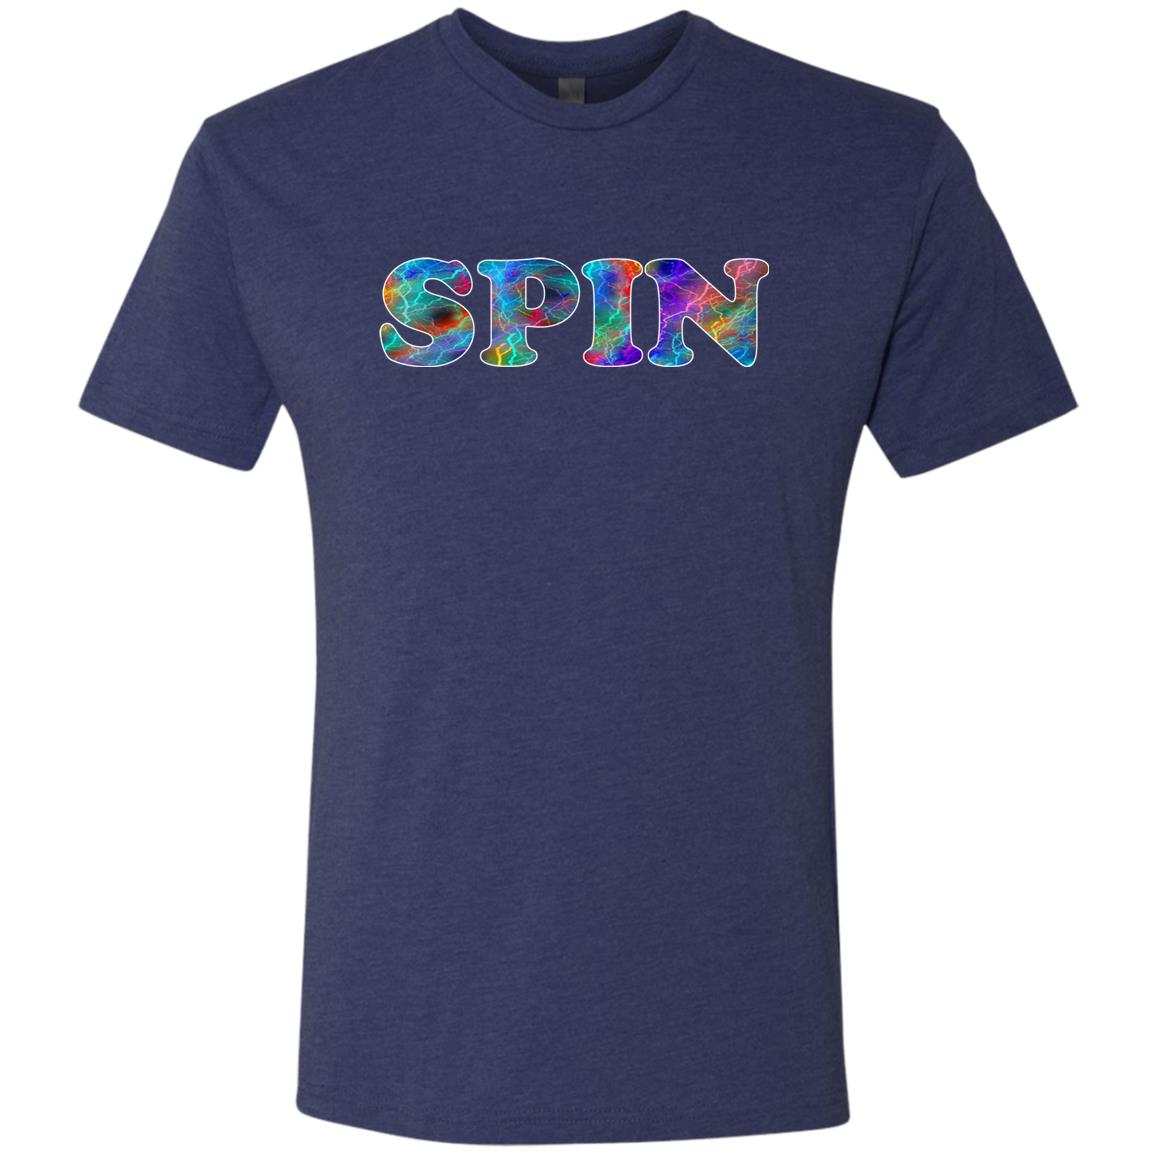 SPIN Sport T-Shirt